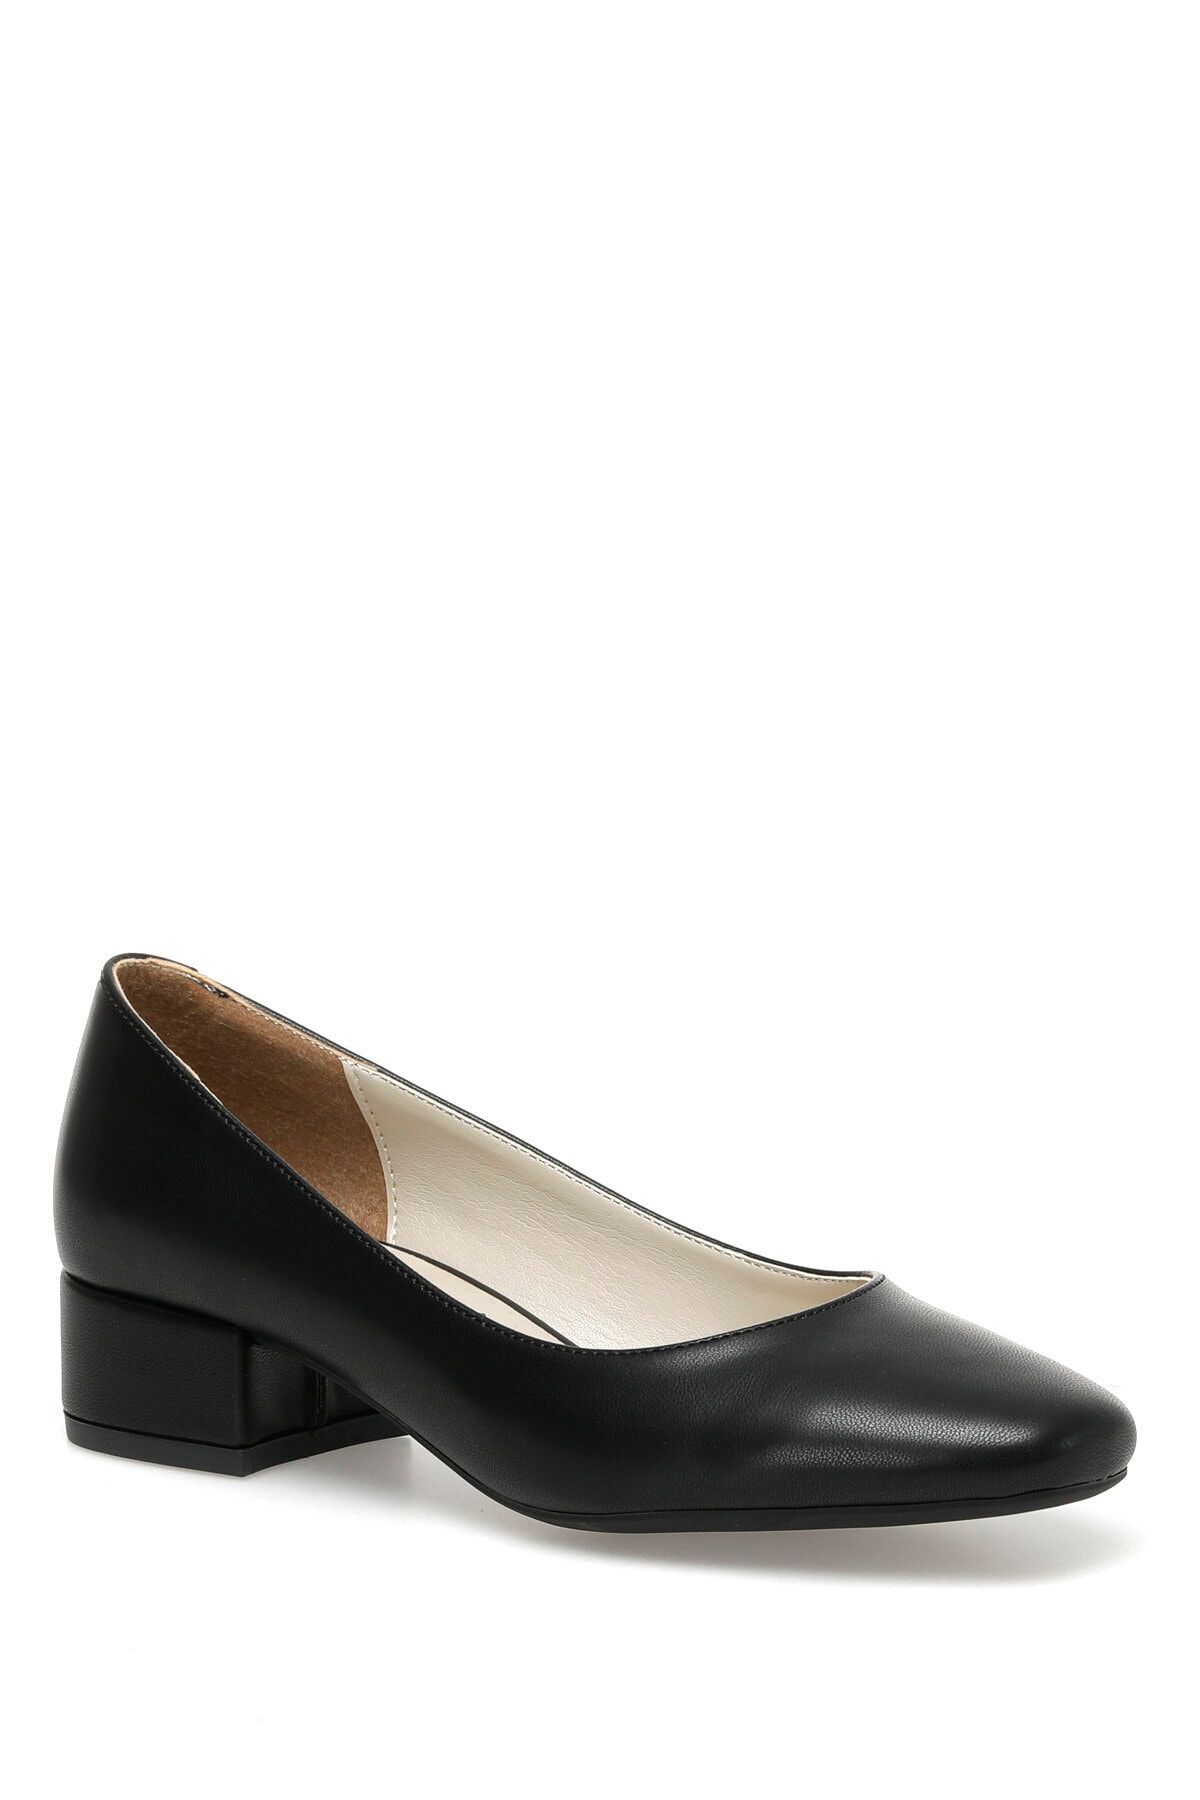 Polaris 321085.z 3fx Siyah Kadın Topuklu Ayakkabı